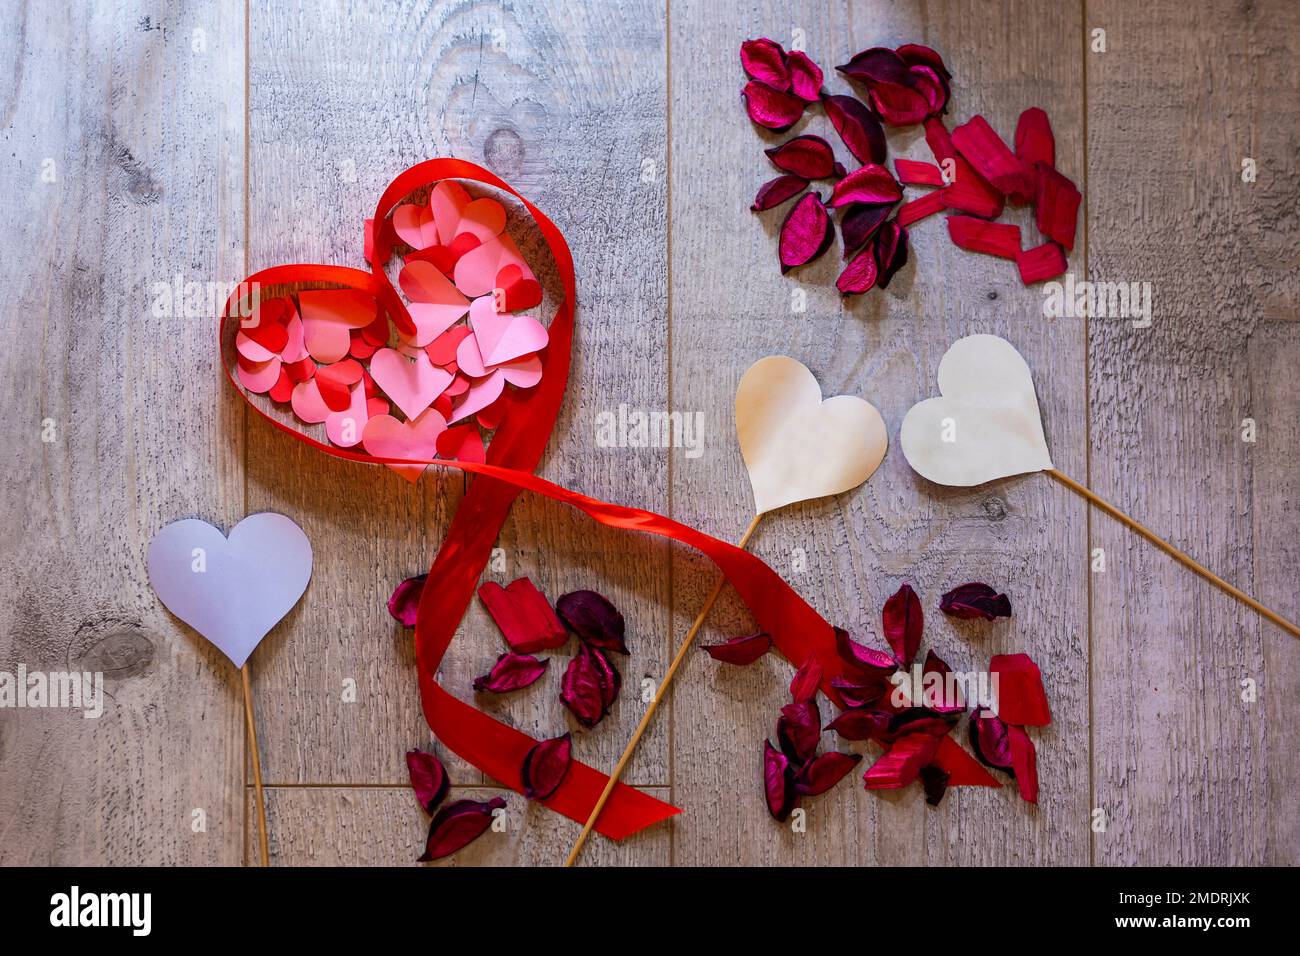 Bild mit einem Herz aus Band und vielen Papierherzen auf einem Holz-Design-Hintergrund. Das Herz ist gefüllt mit rosa und roten Papierherzen Stockfoto